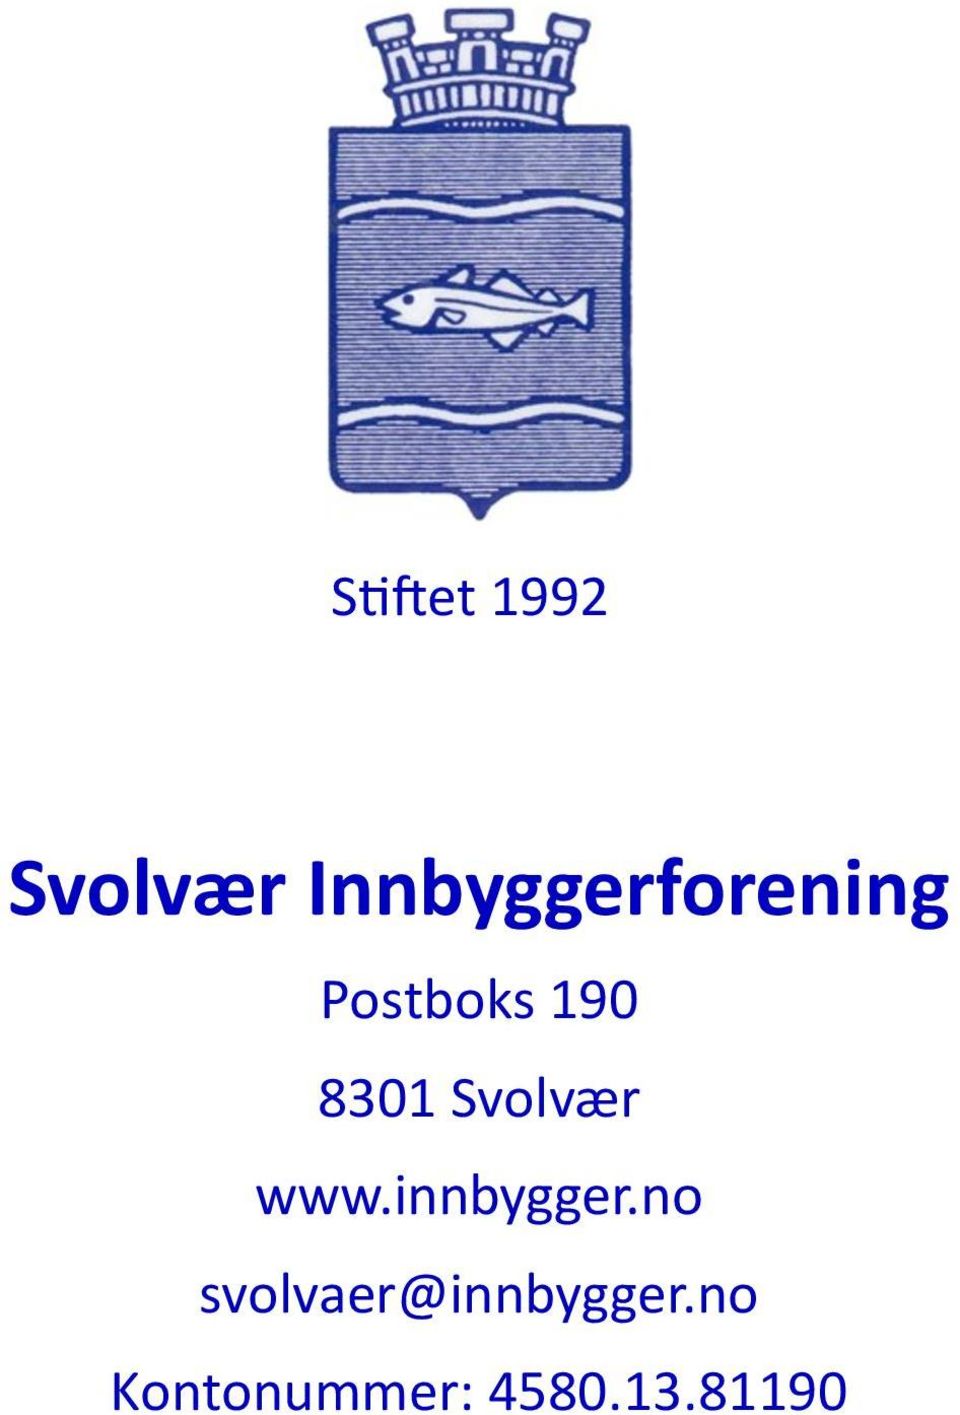 8301 Svolvær www.innbygger.